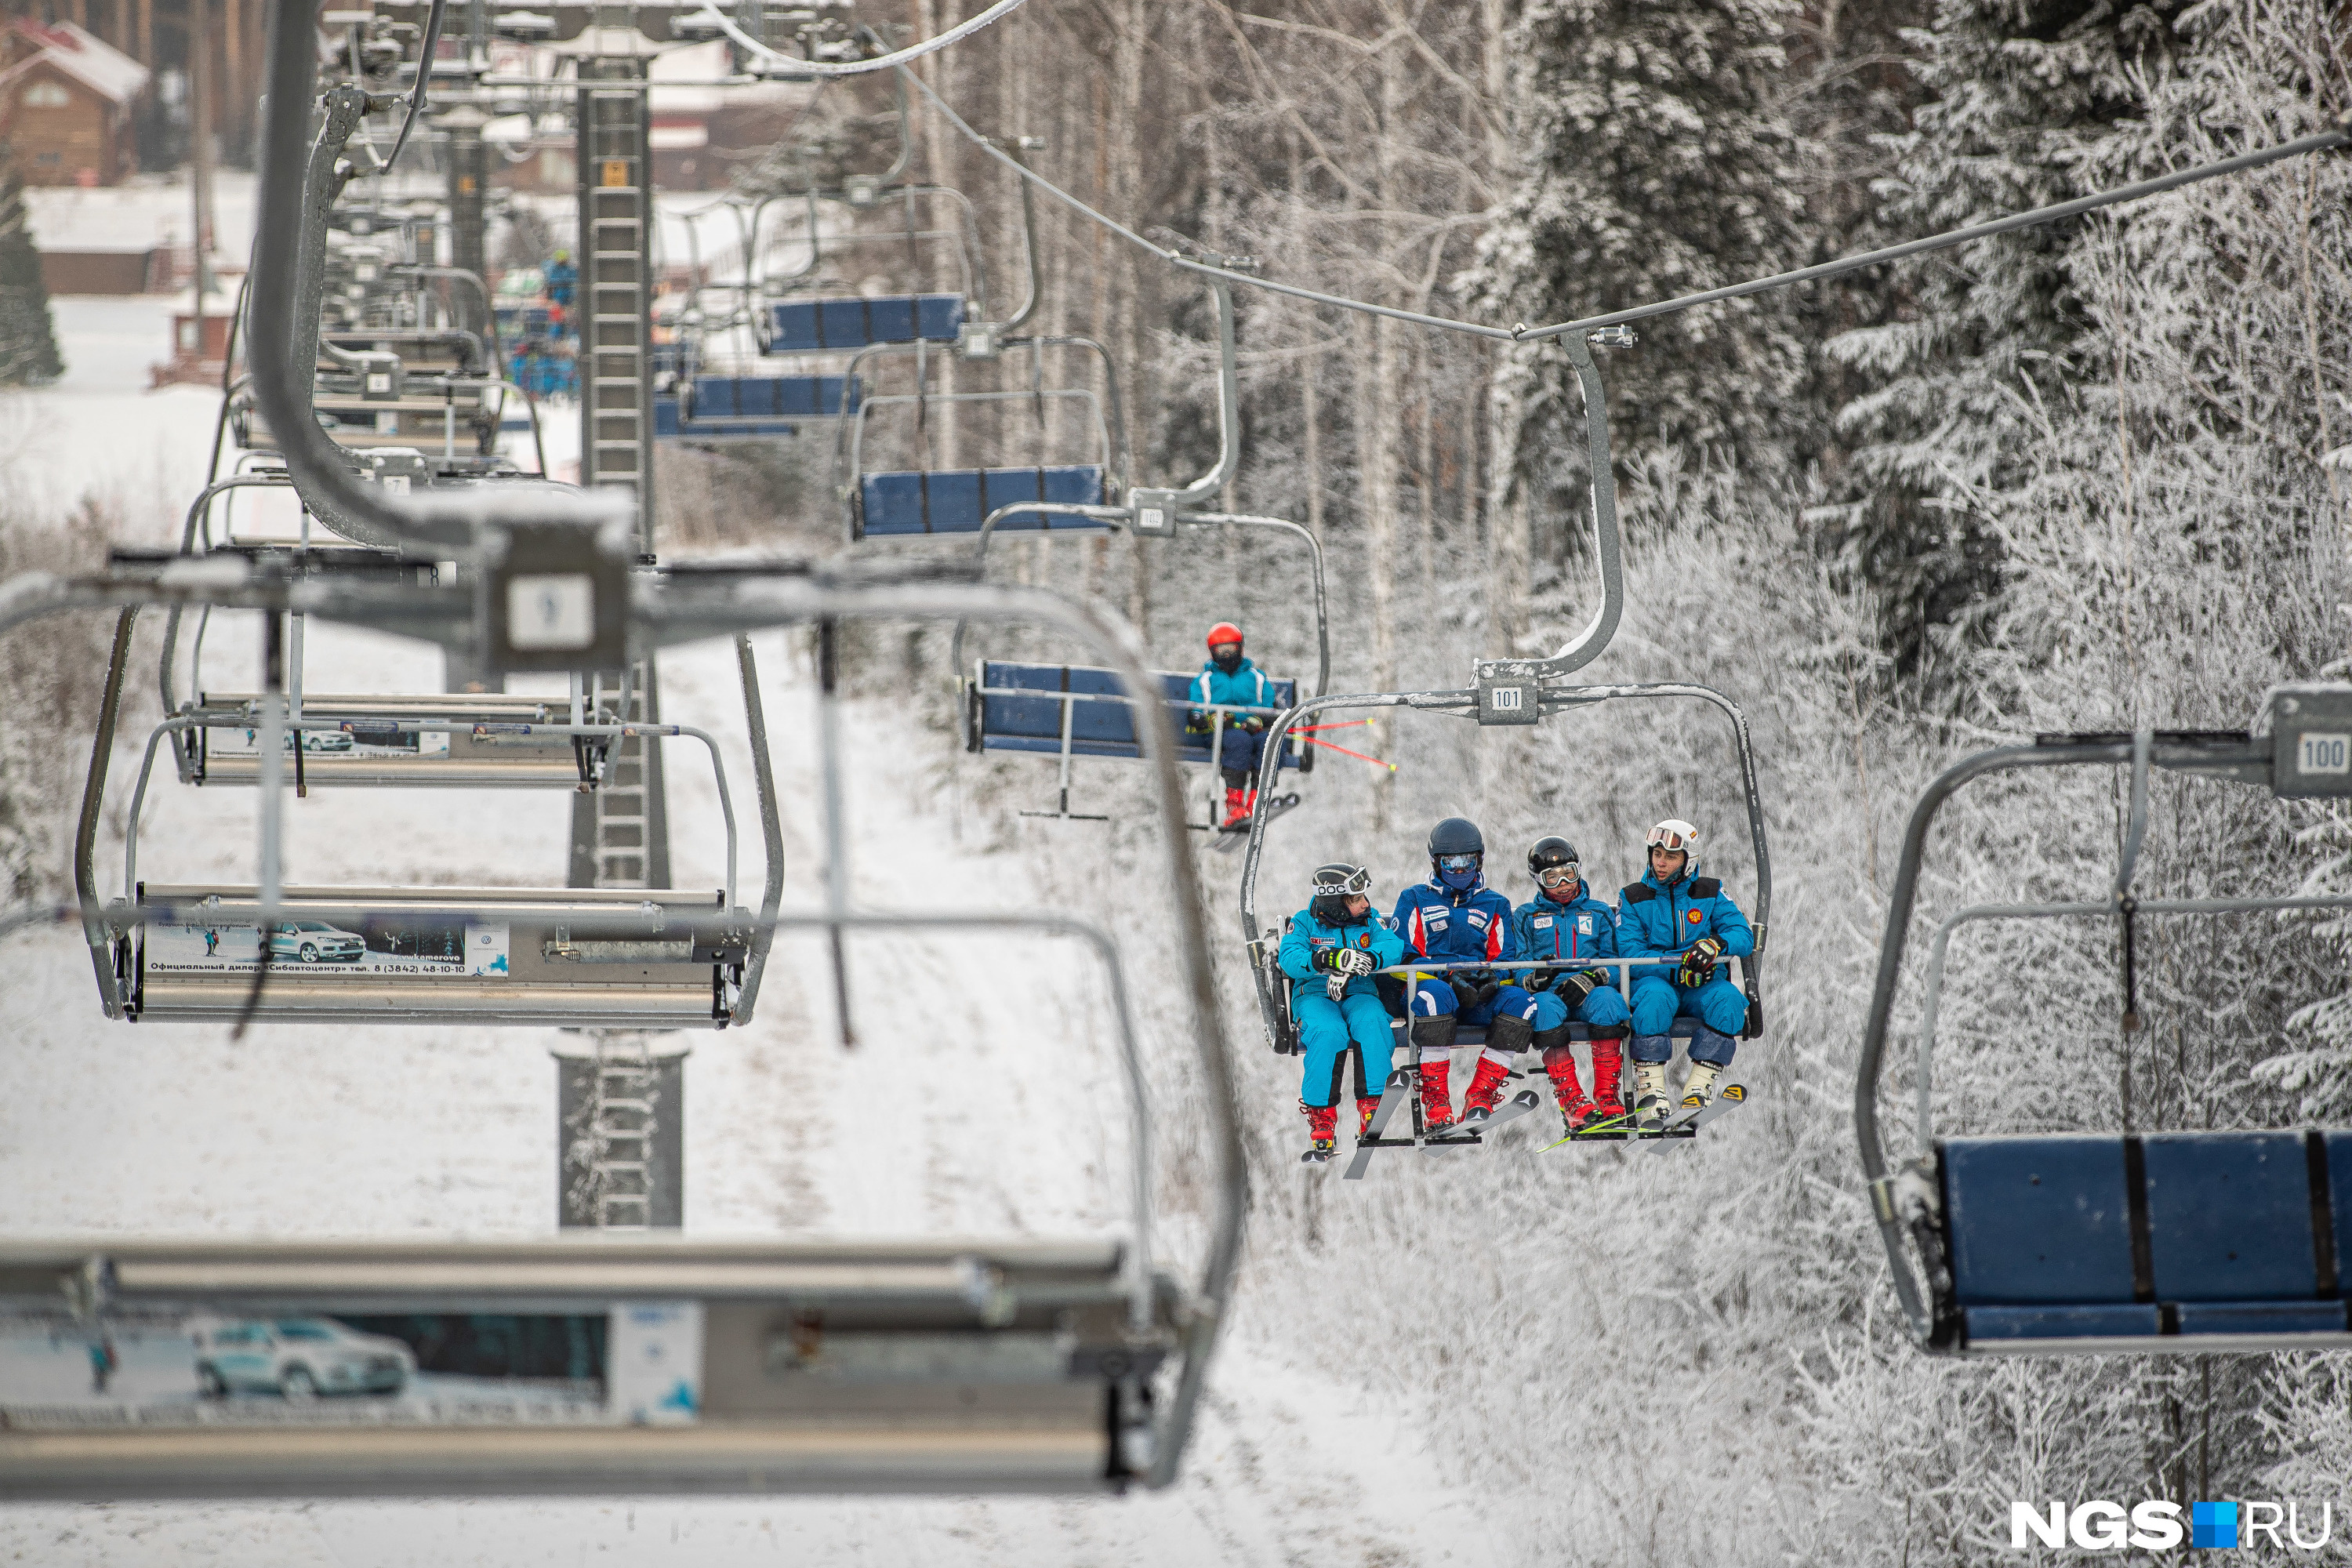 Если вы не катаетесь на лыжах или сноуборде, можно кататься на «плюшках» — для сноутюбинга есть специальная трасса с подъемником 